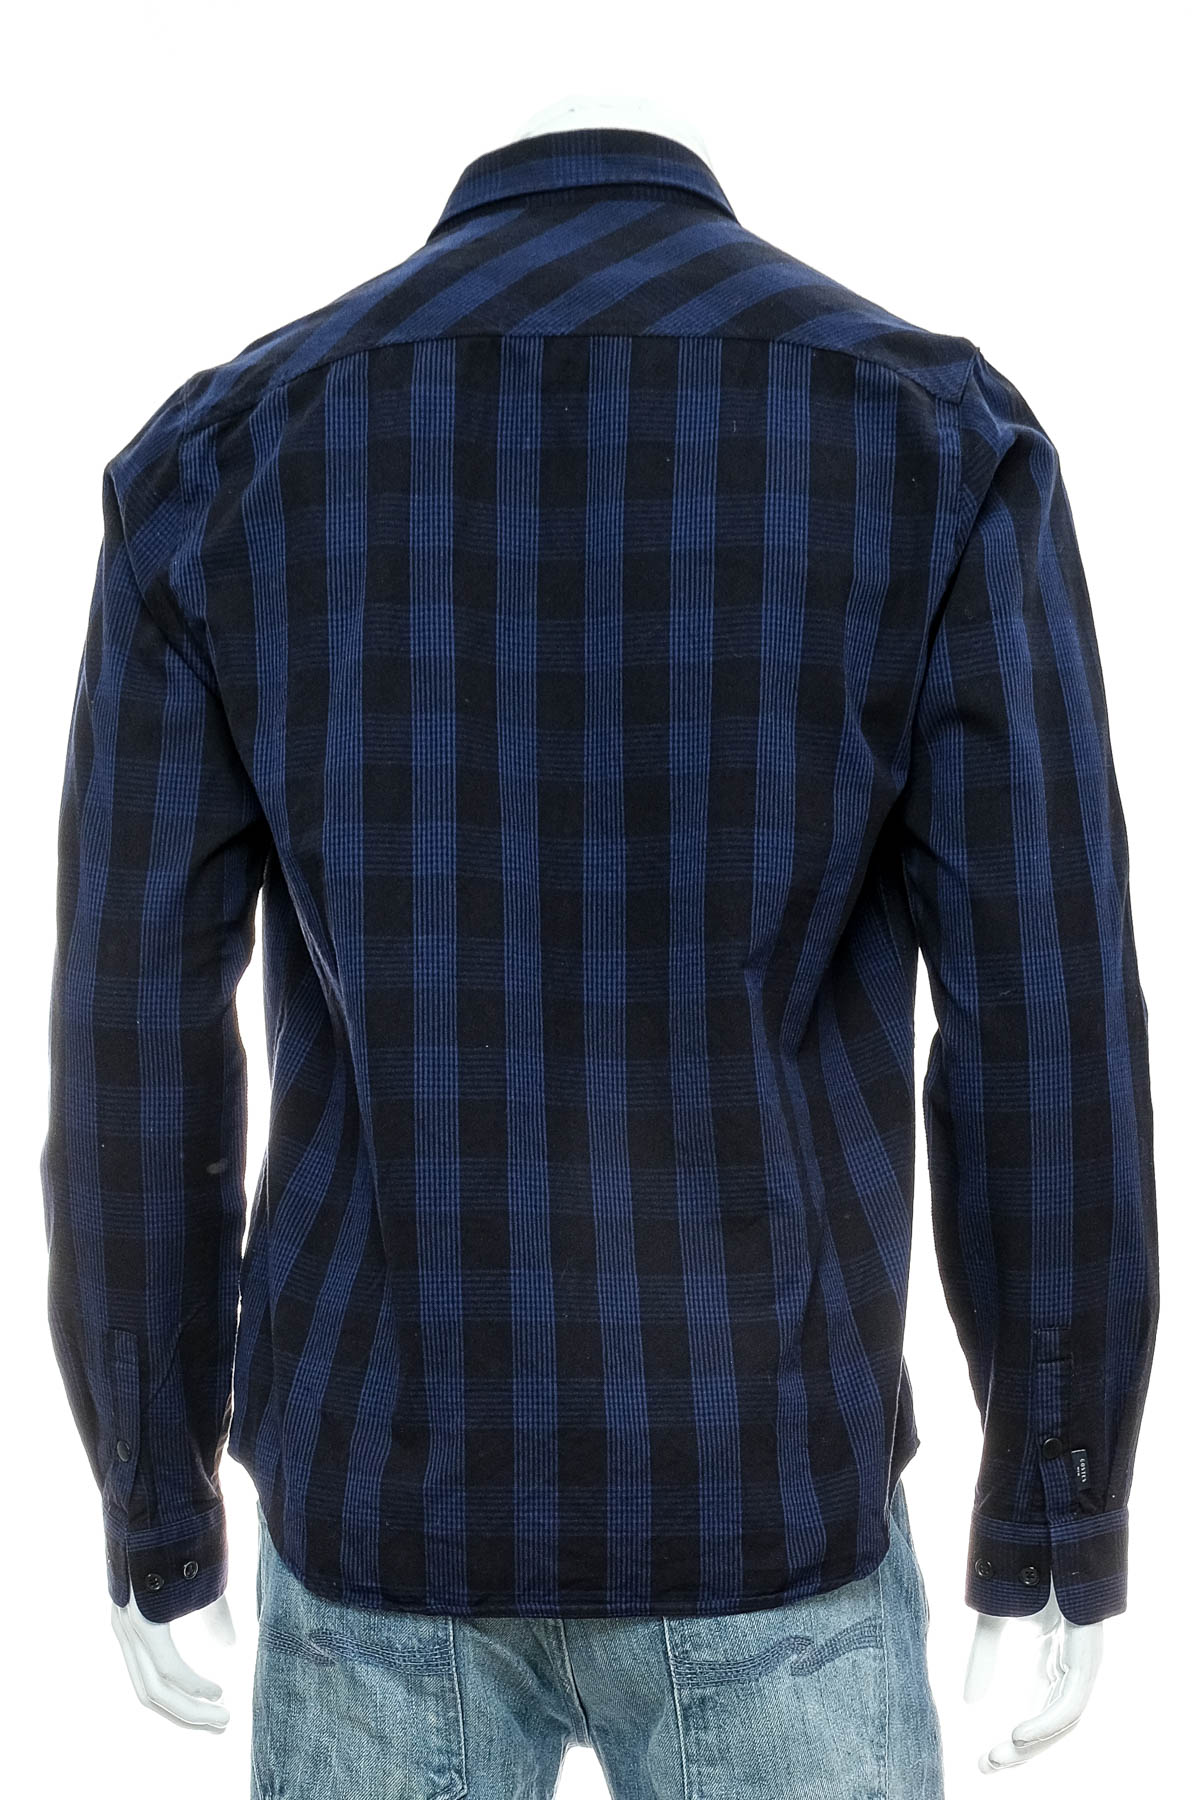 Ανδρικό πουκάμισο - Costes - 1